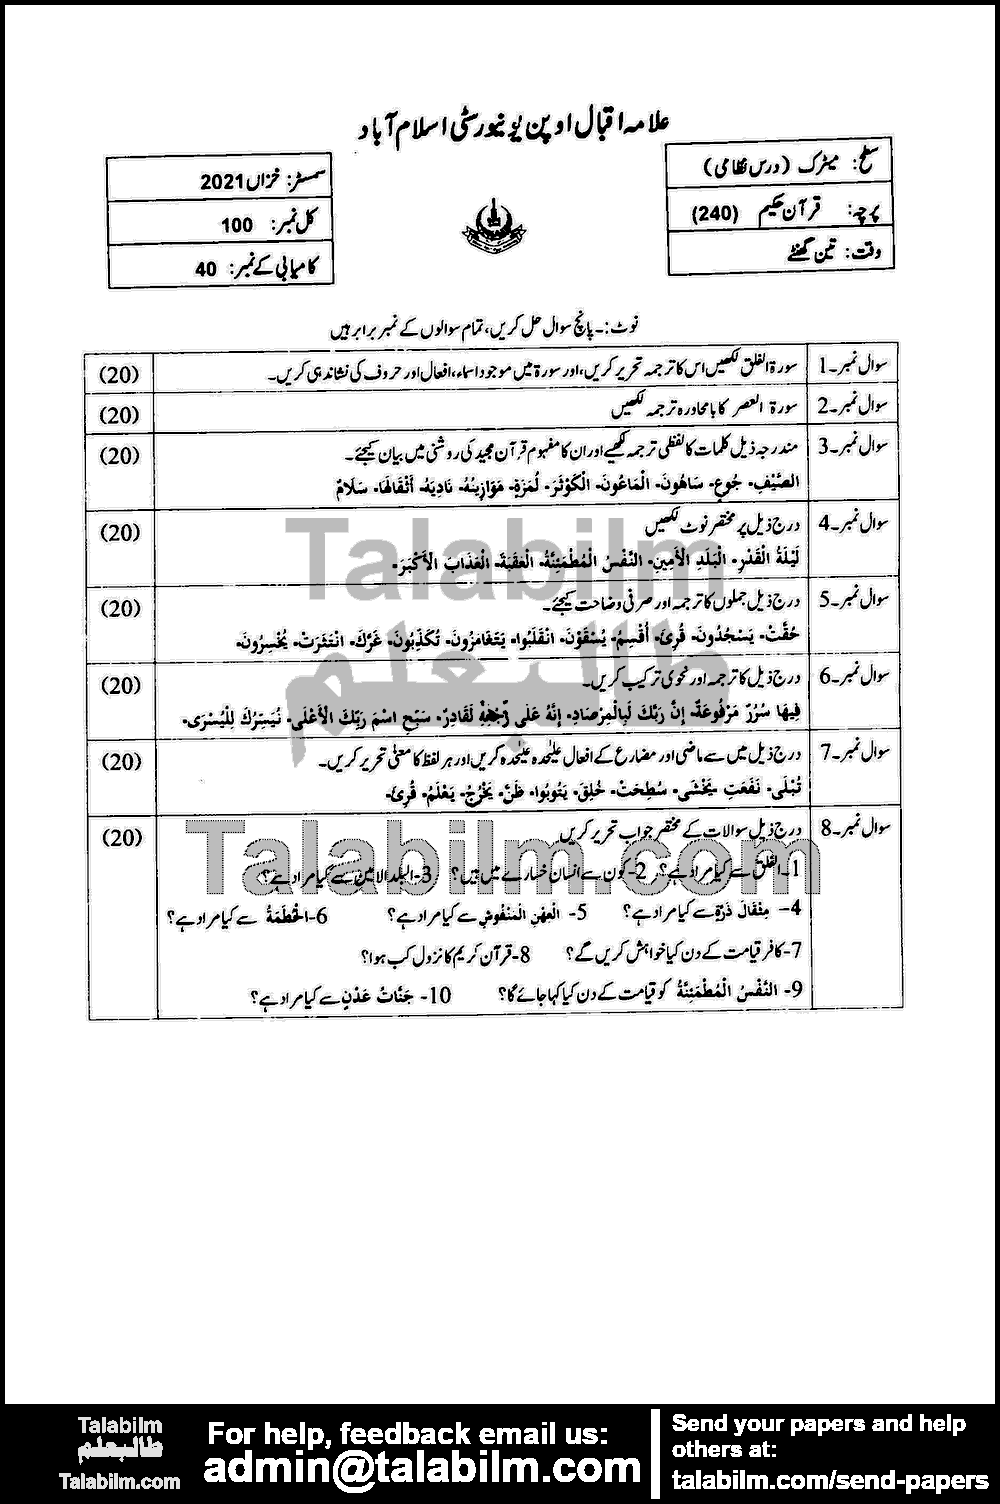 Quran-e-Hakeem 240 past paper for Autumn 2021